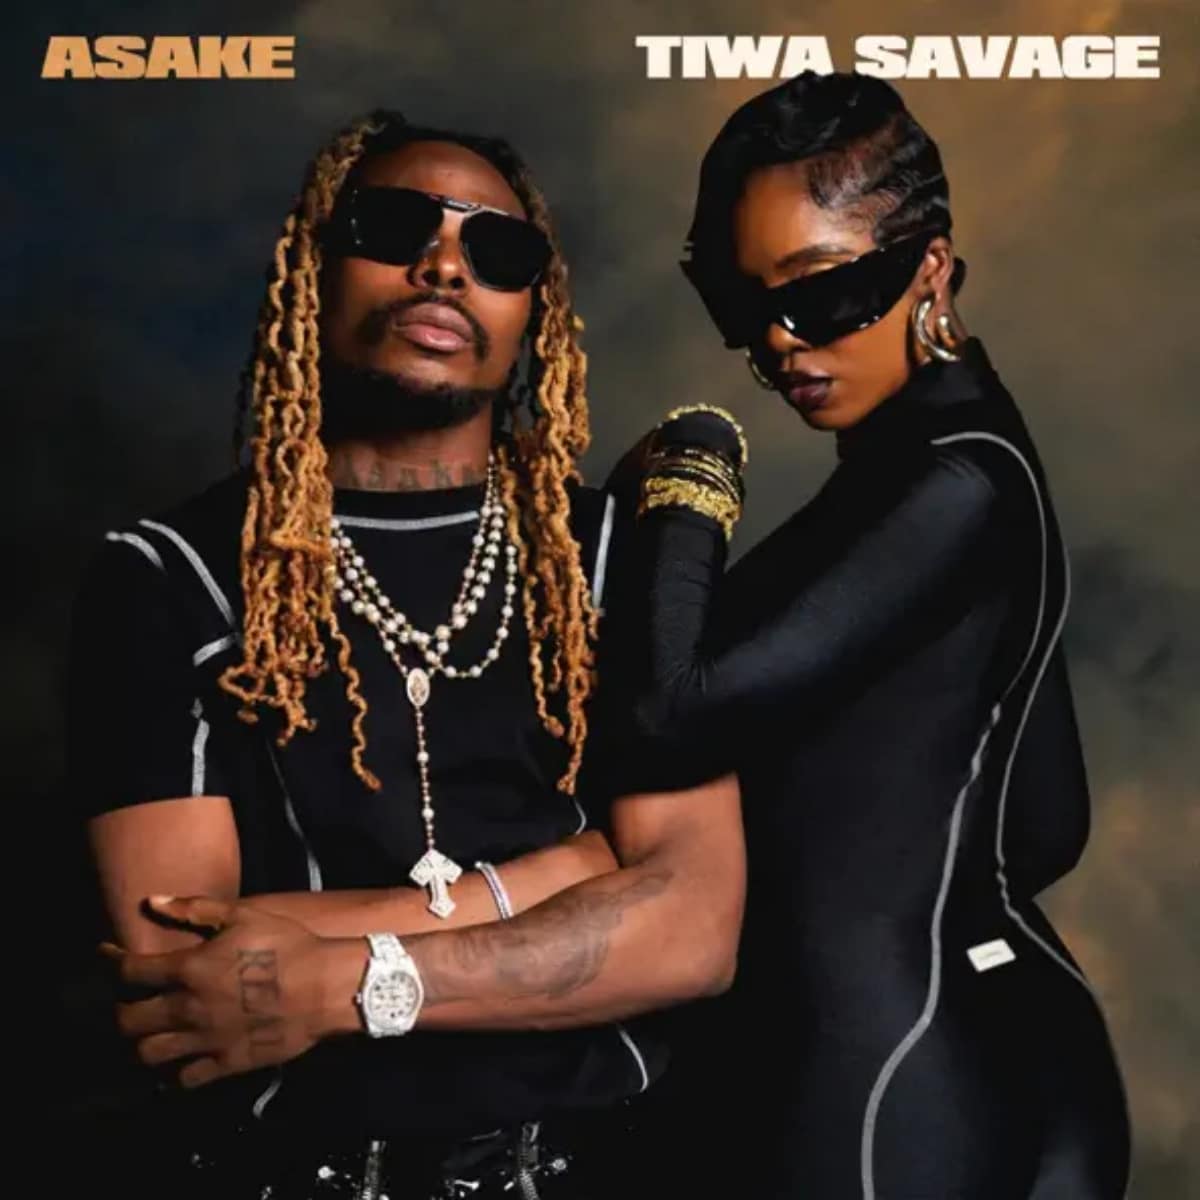 DOWNLOAD: Tiwa Savage Ft. Asake – “Loaded” Mp3